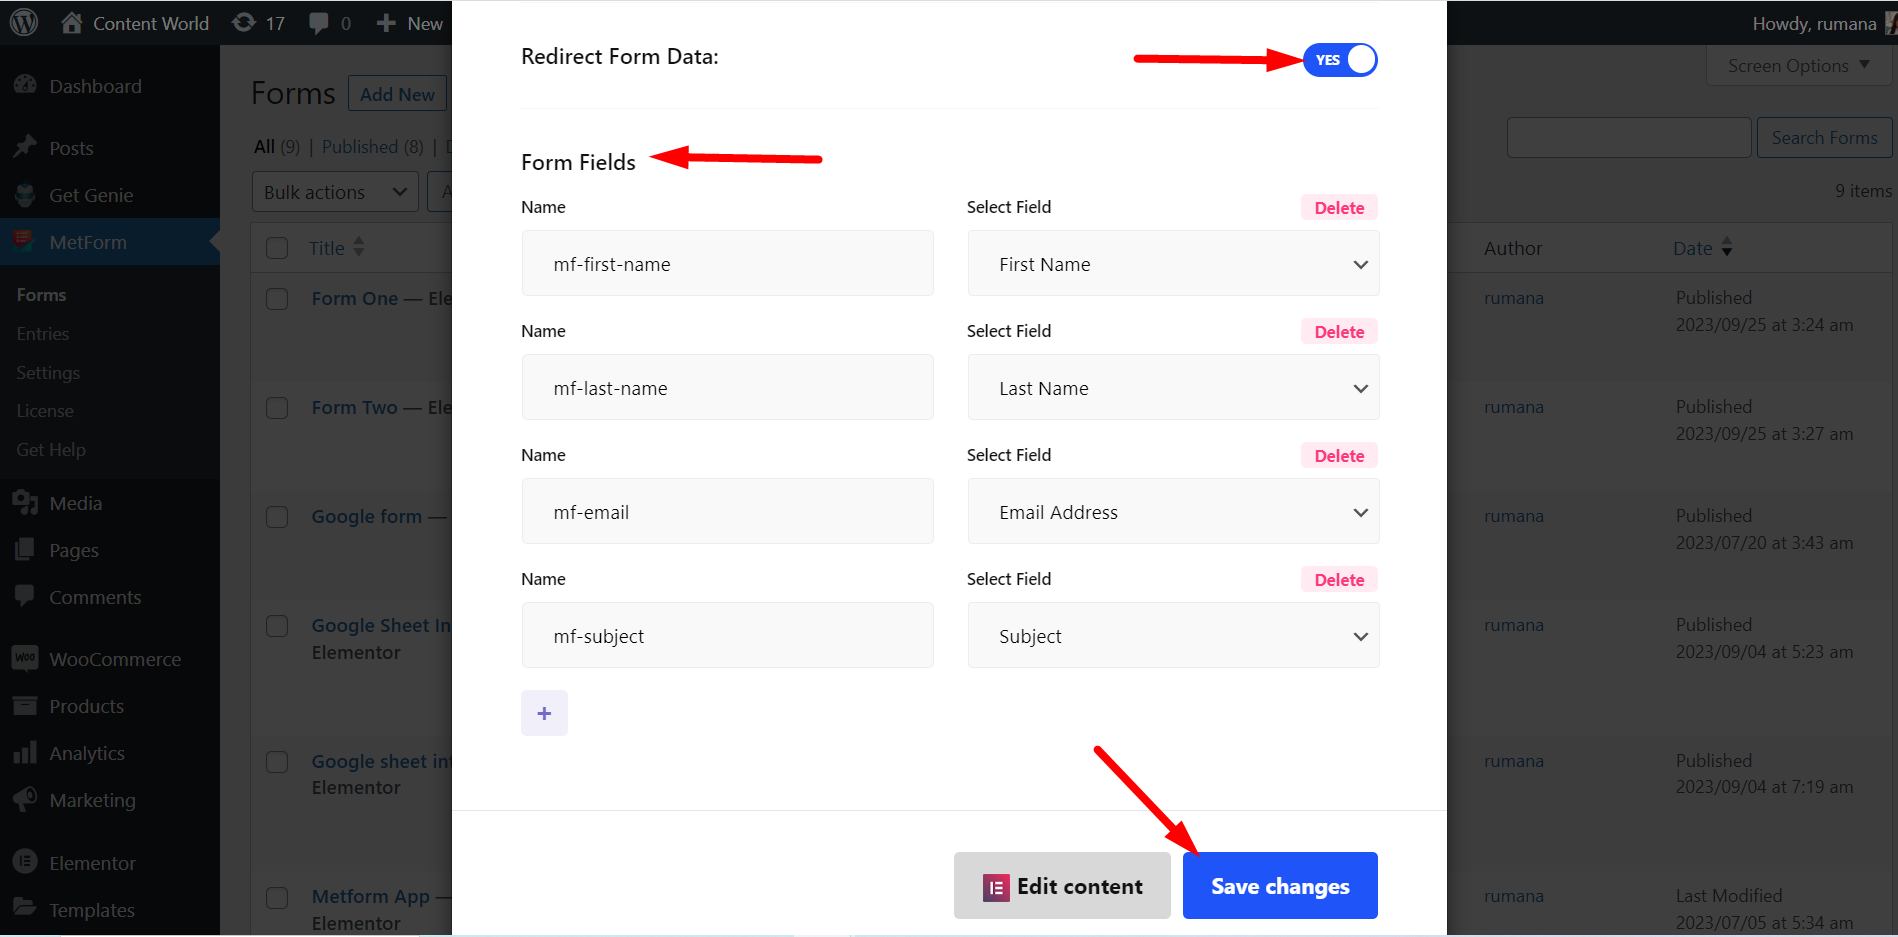 Aktivera omdirigeringsknapp för formulärdata för att lägga till fält för att skicka data från ett formulär till ett annat